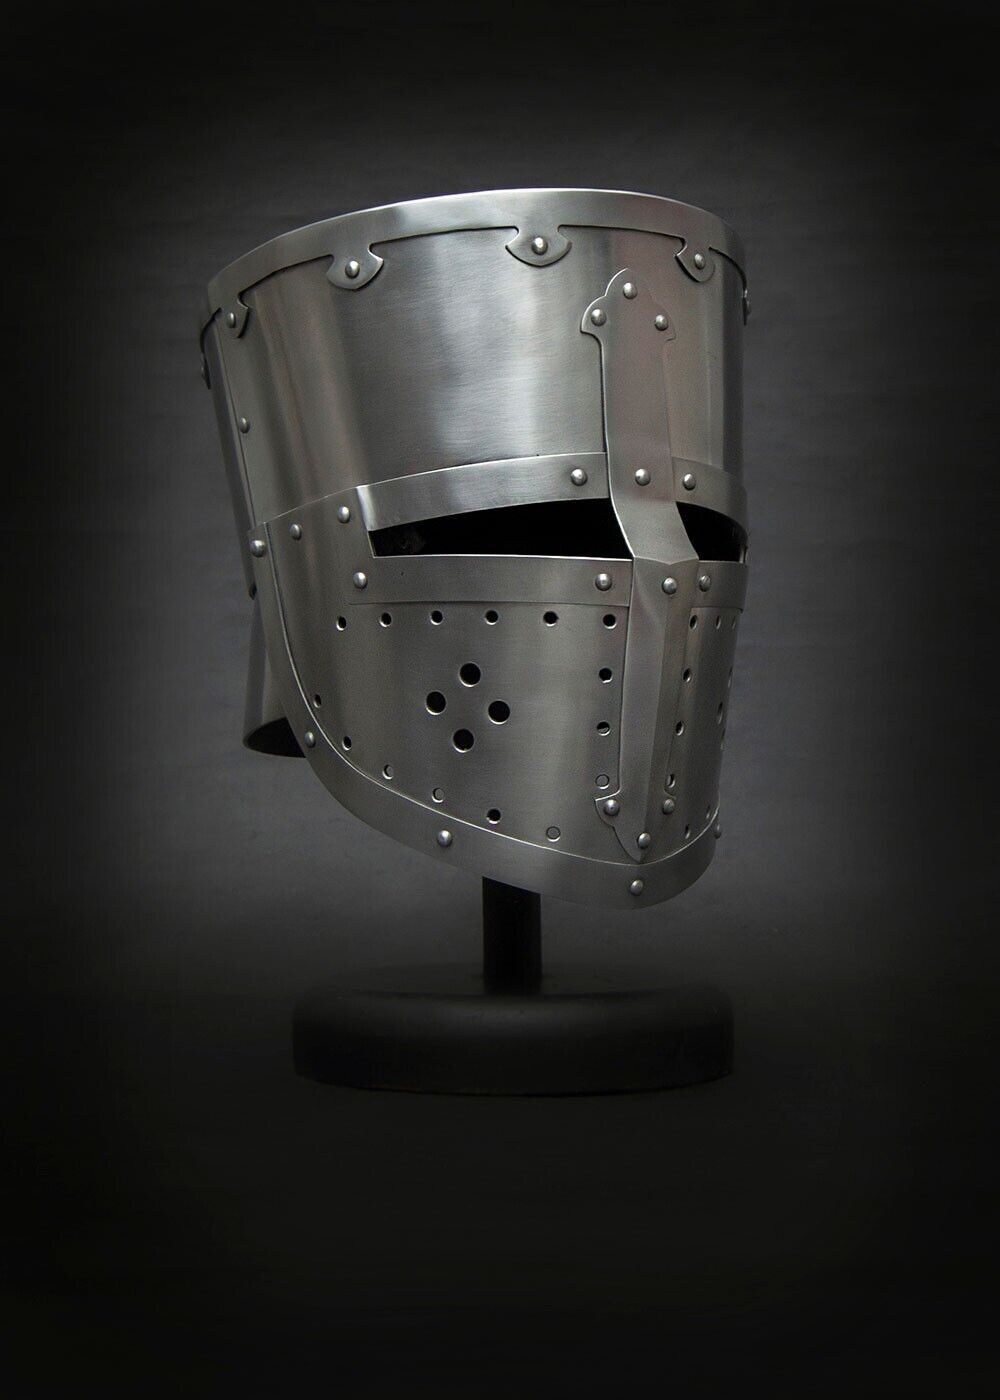 Medieval Steel Templar Crusader Knight Armor Helmet, Cosplay SCA Larp Helmet